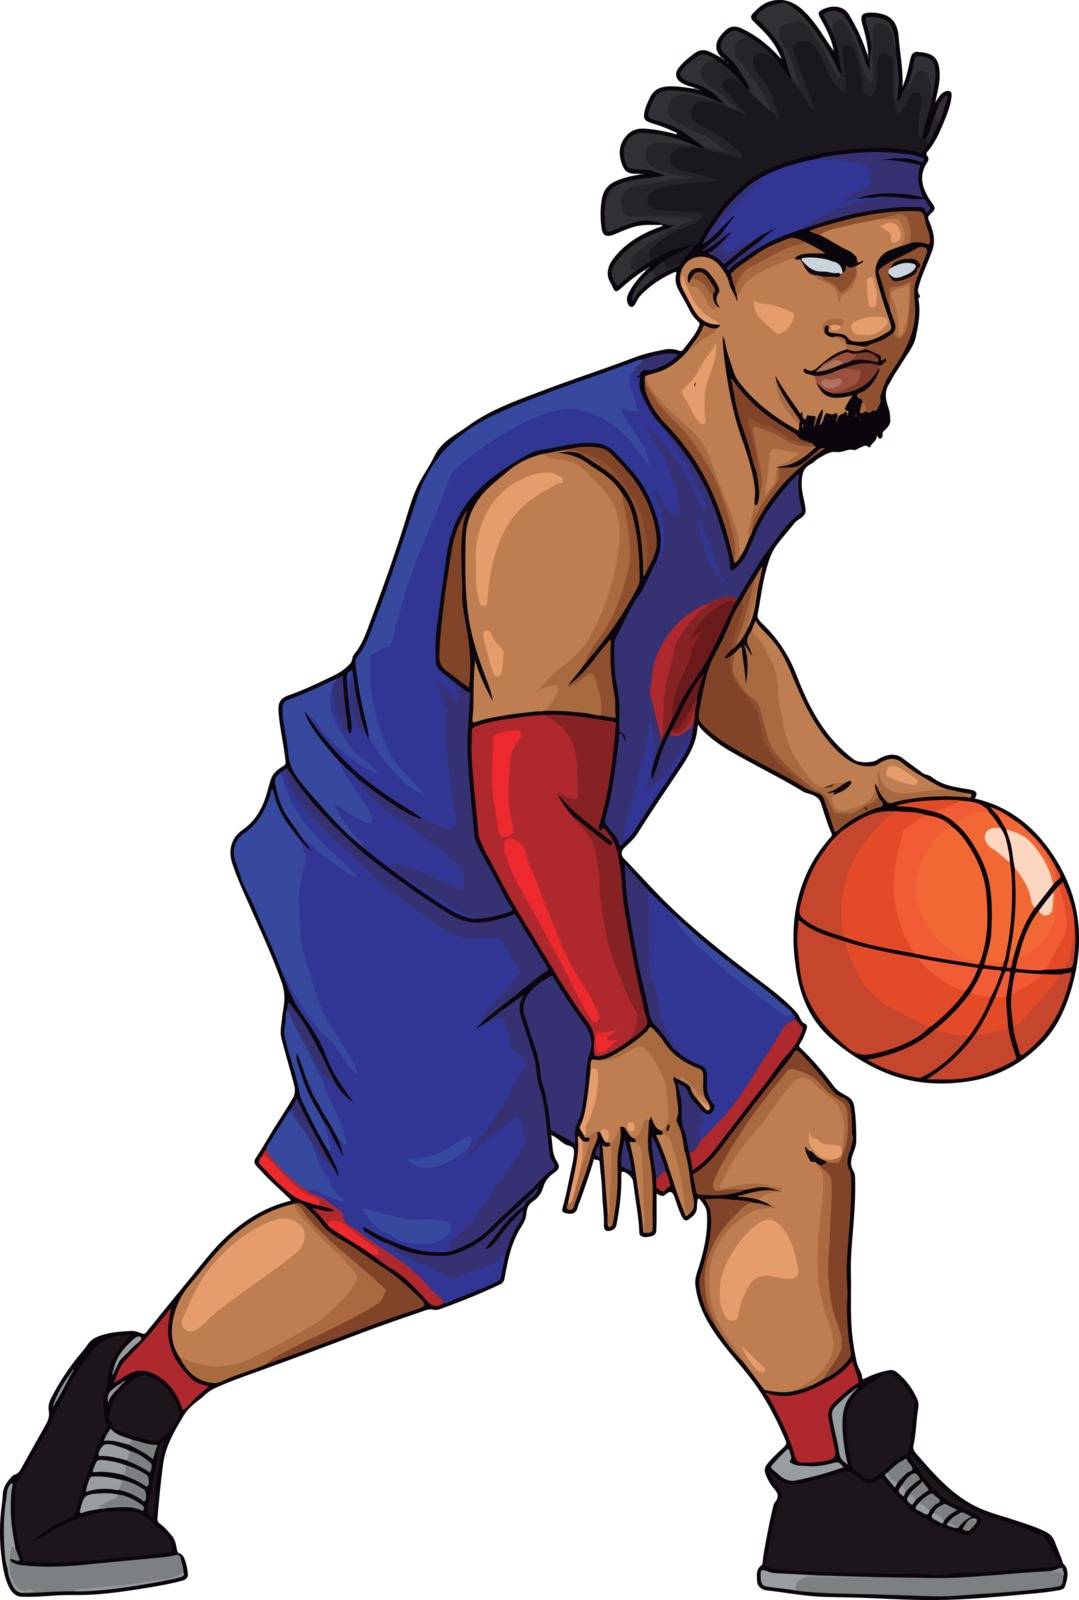 Basketball player dribbling, illustration, vector on white background.